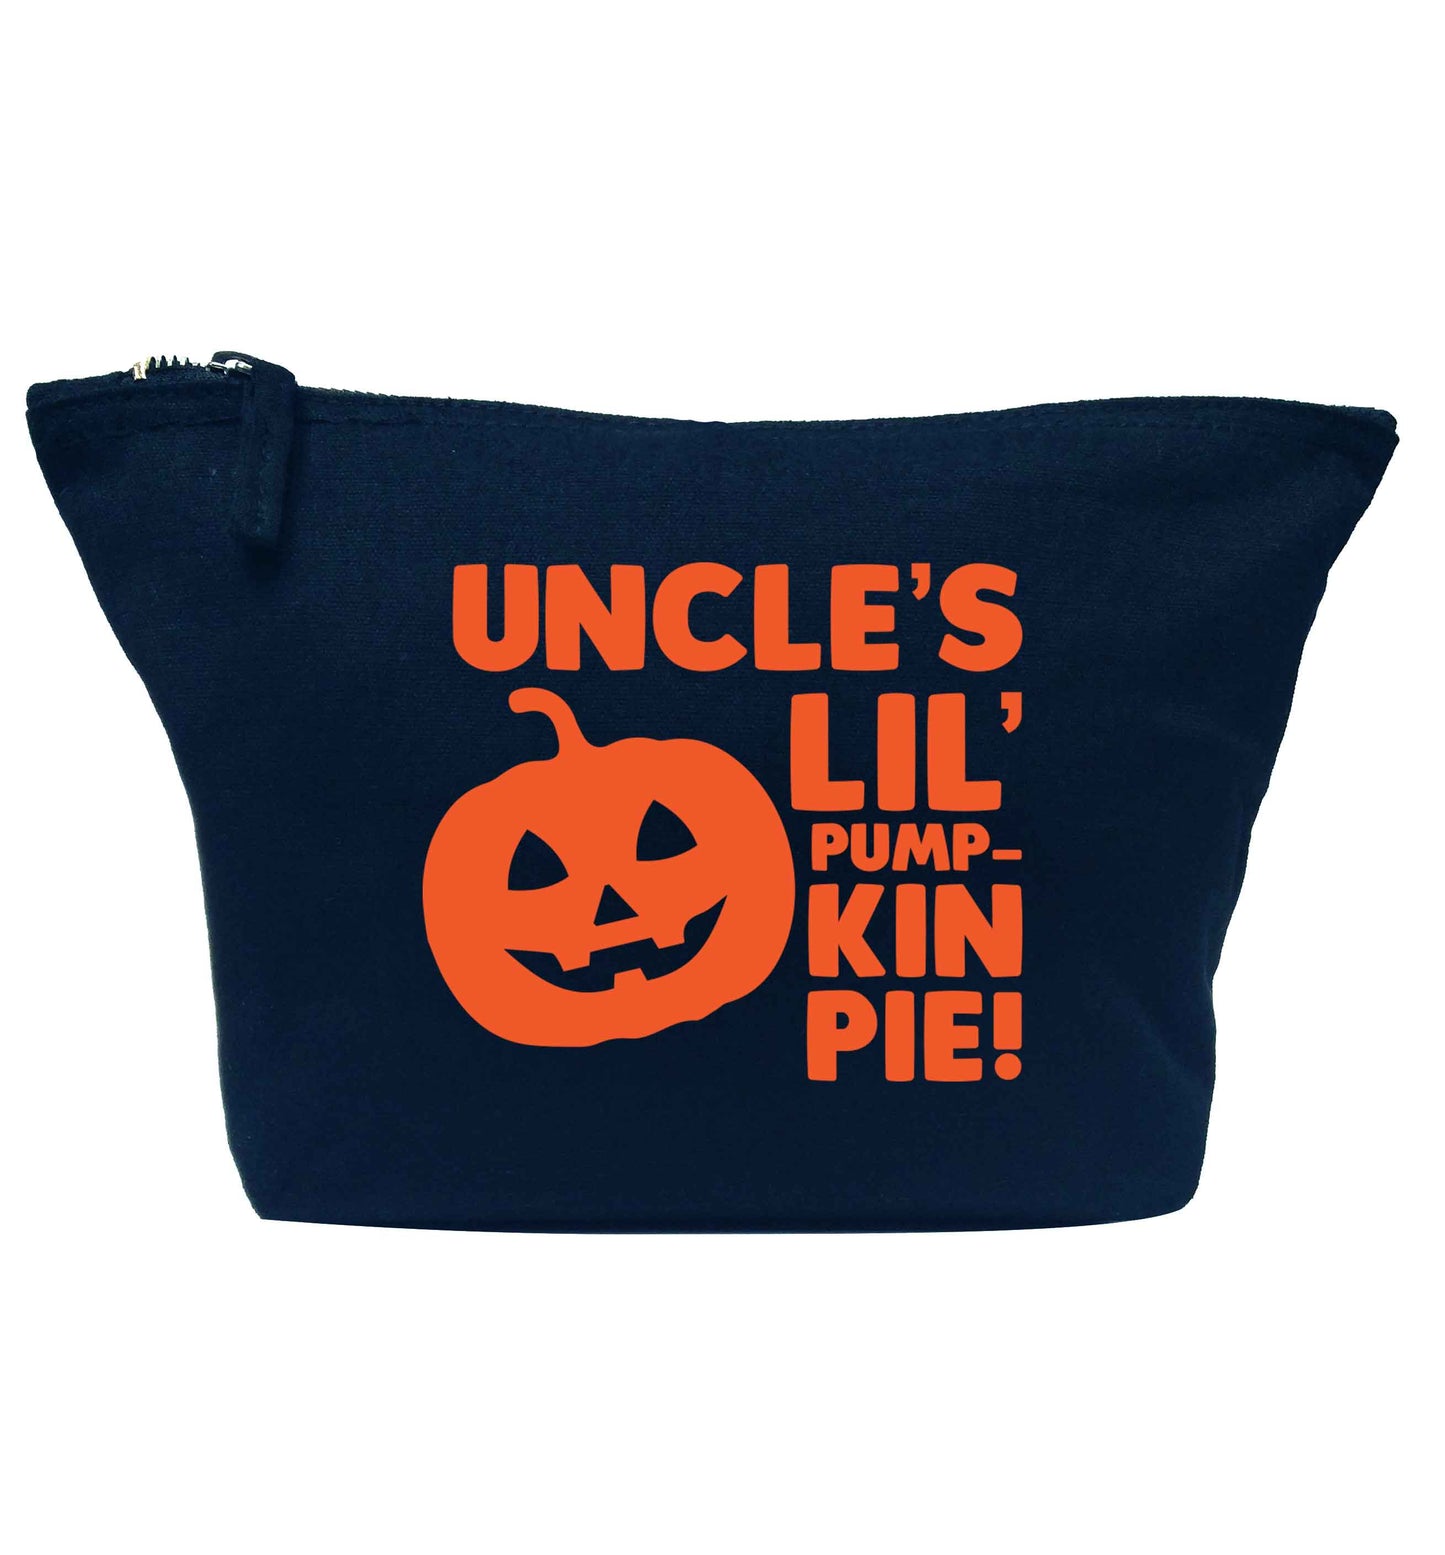 Uncle's lil' pumpkin pie navy makeup bag